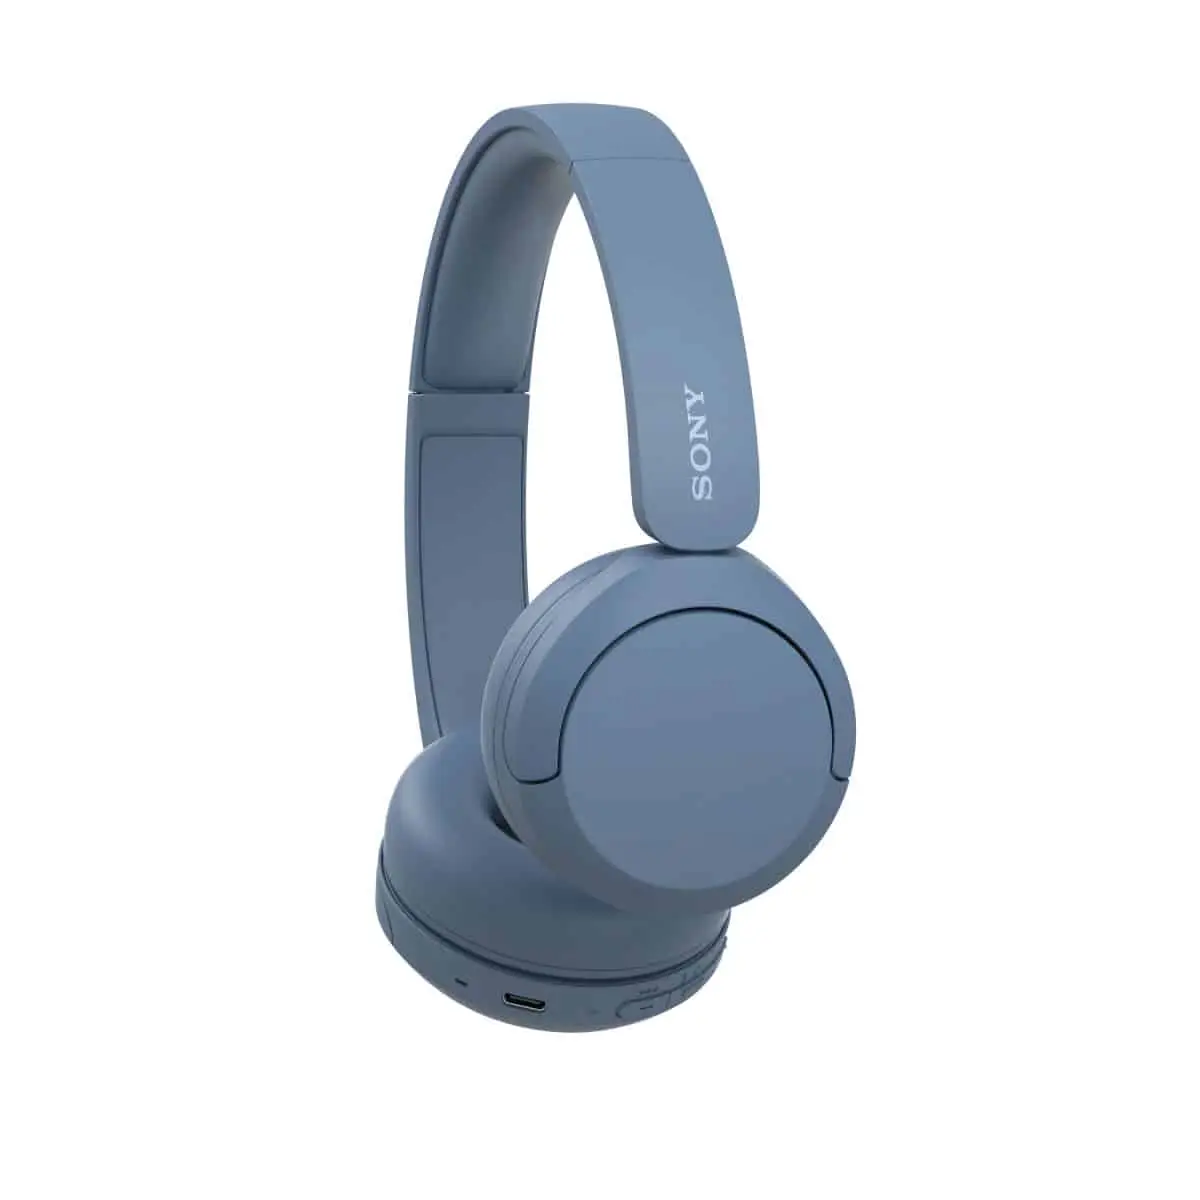 Sony WH-CH520 On-Ear Wireless Headphones